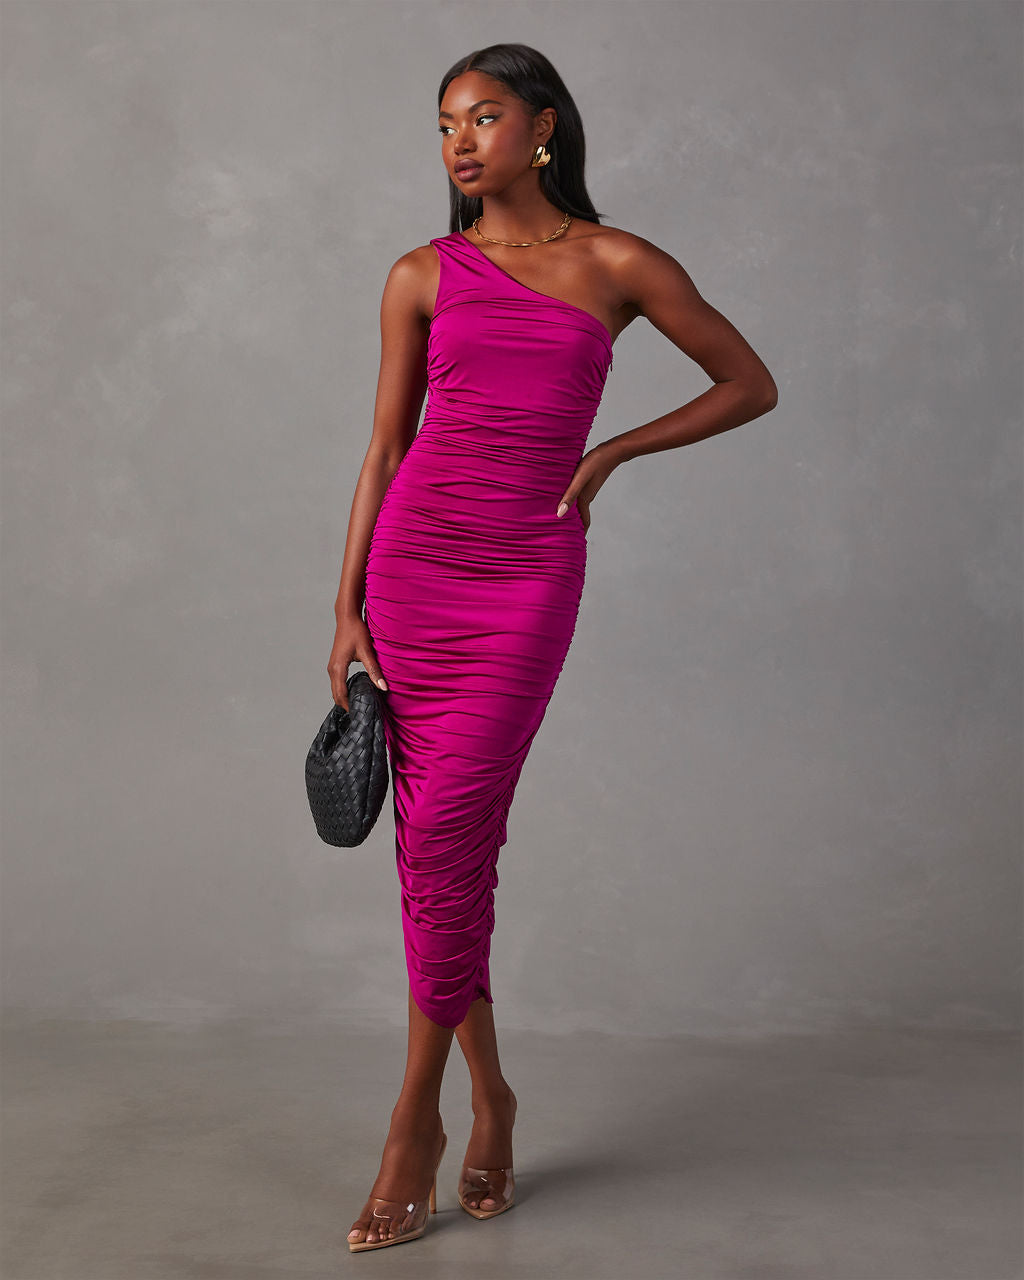 Never Let Go Rose Pink One Shoulder Ruched Side Detail Maxi Dress